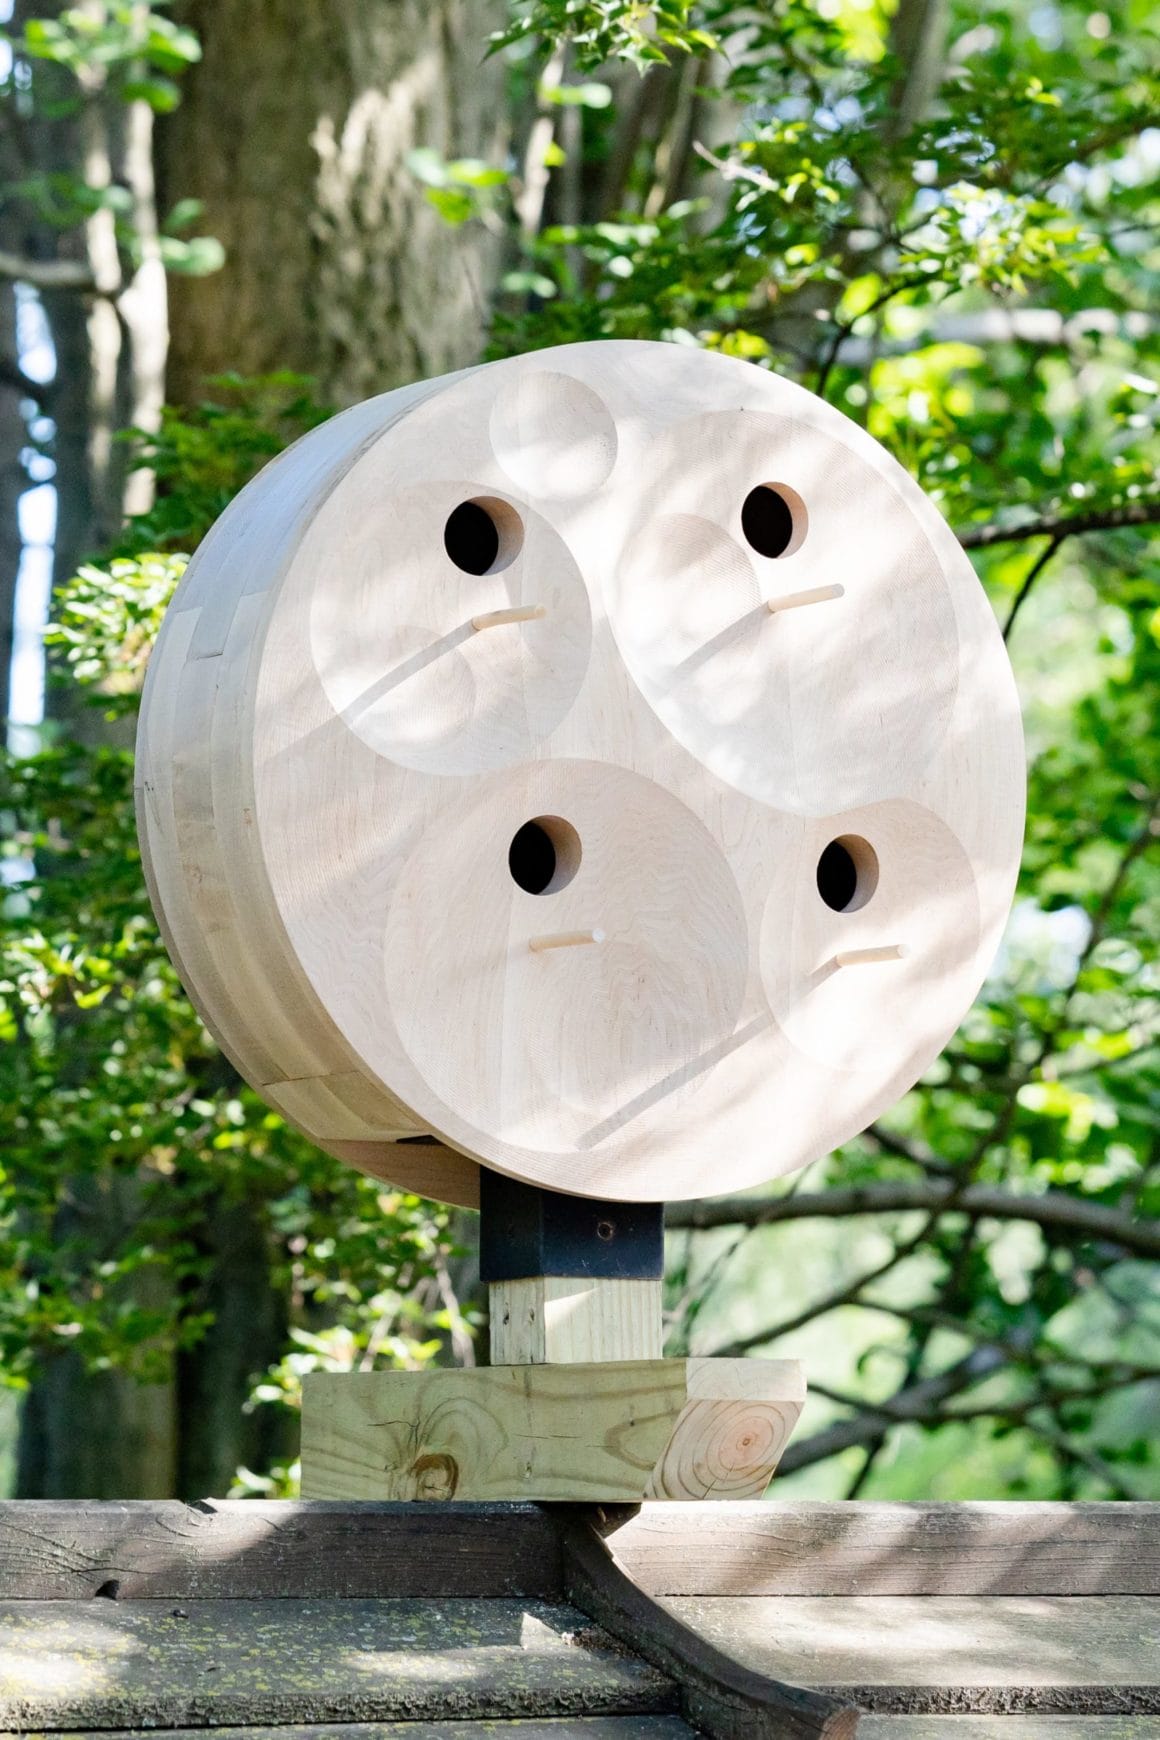 Cet abri est fait en bois avec une forme ronde. Il possède quatre ronds pour permettre aux oiseaux d'entrer, et en-dessous des ronds se trouve des bâtons pour que les oiseaux puissent s'installer dessus.